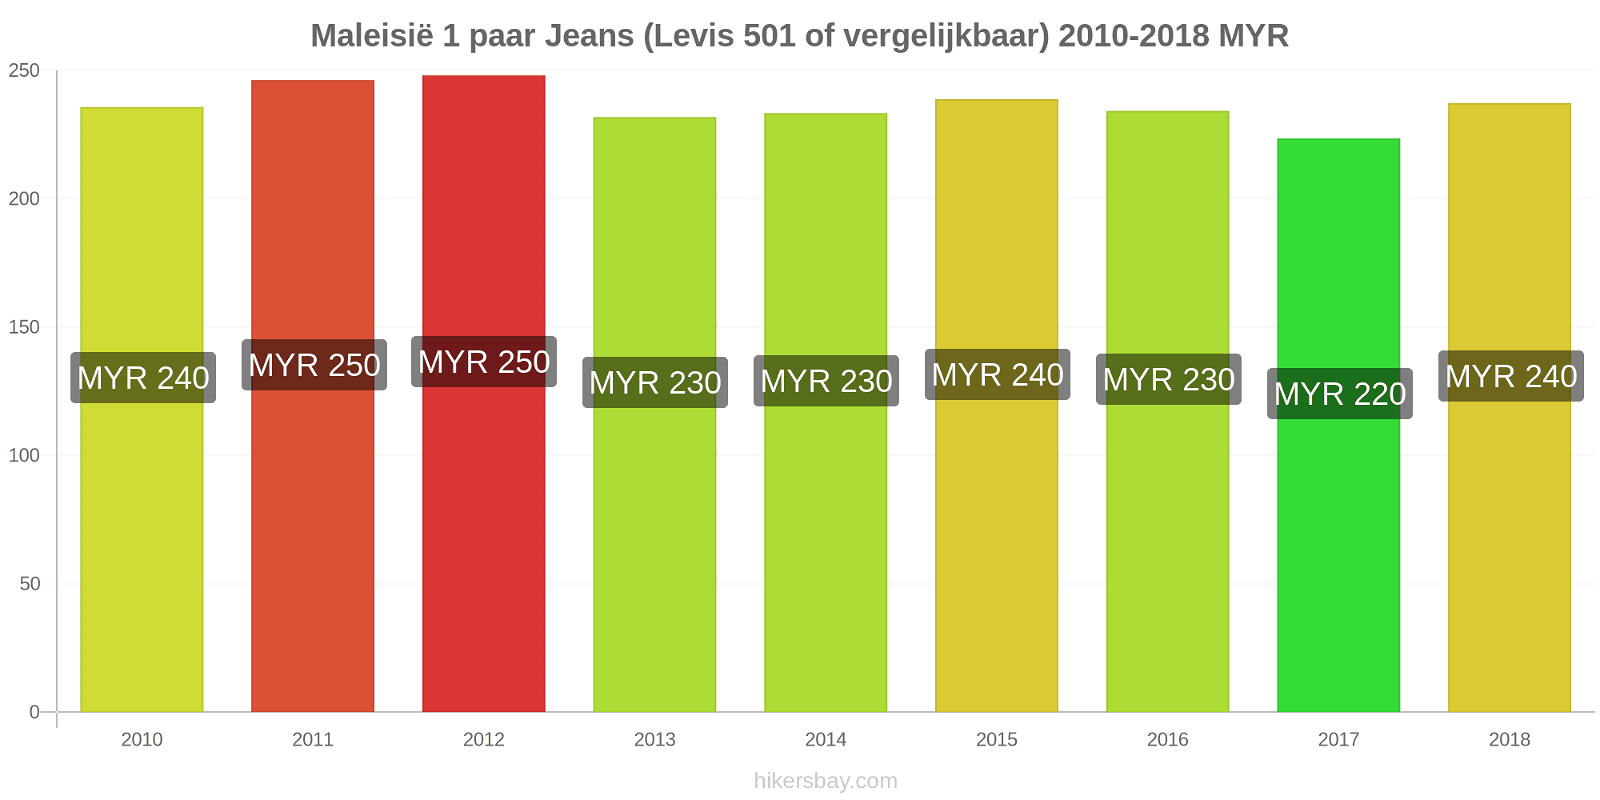 Maleisië prijswijzigingen 1 paar jeans (Levis 501 of vergelijkbaar) hikersbay.com